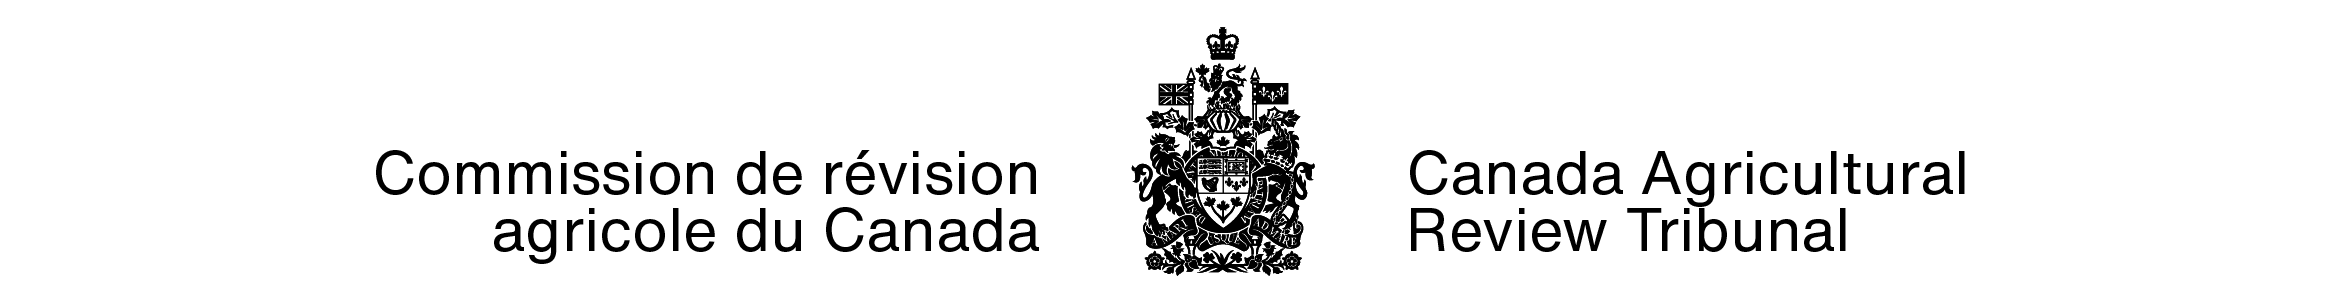 Signature organisationnelle de la Commission de révision agricole du Canada avec armoiries dans ses couleurs standards (armoiries du Canada en noir, lettres noires).